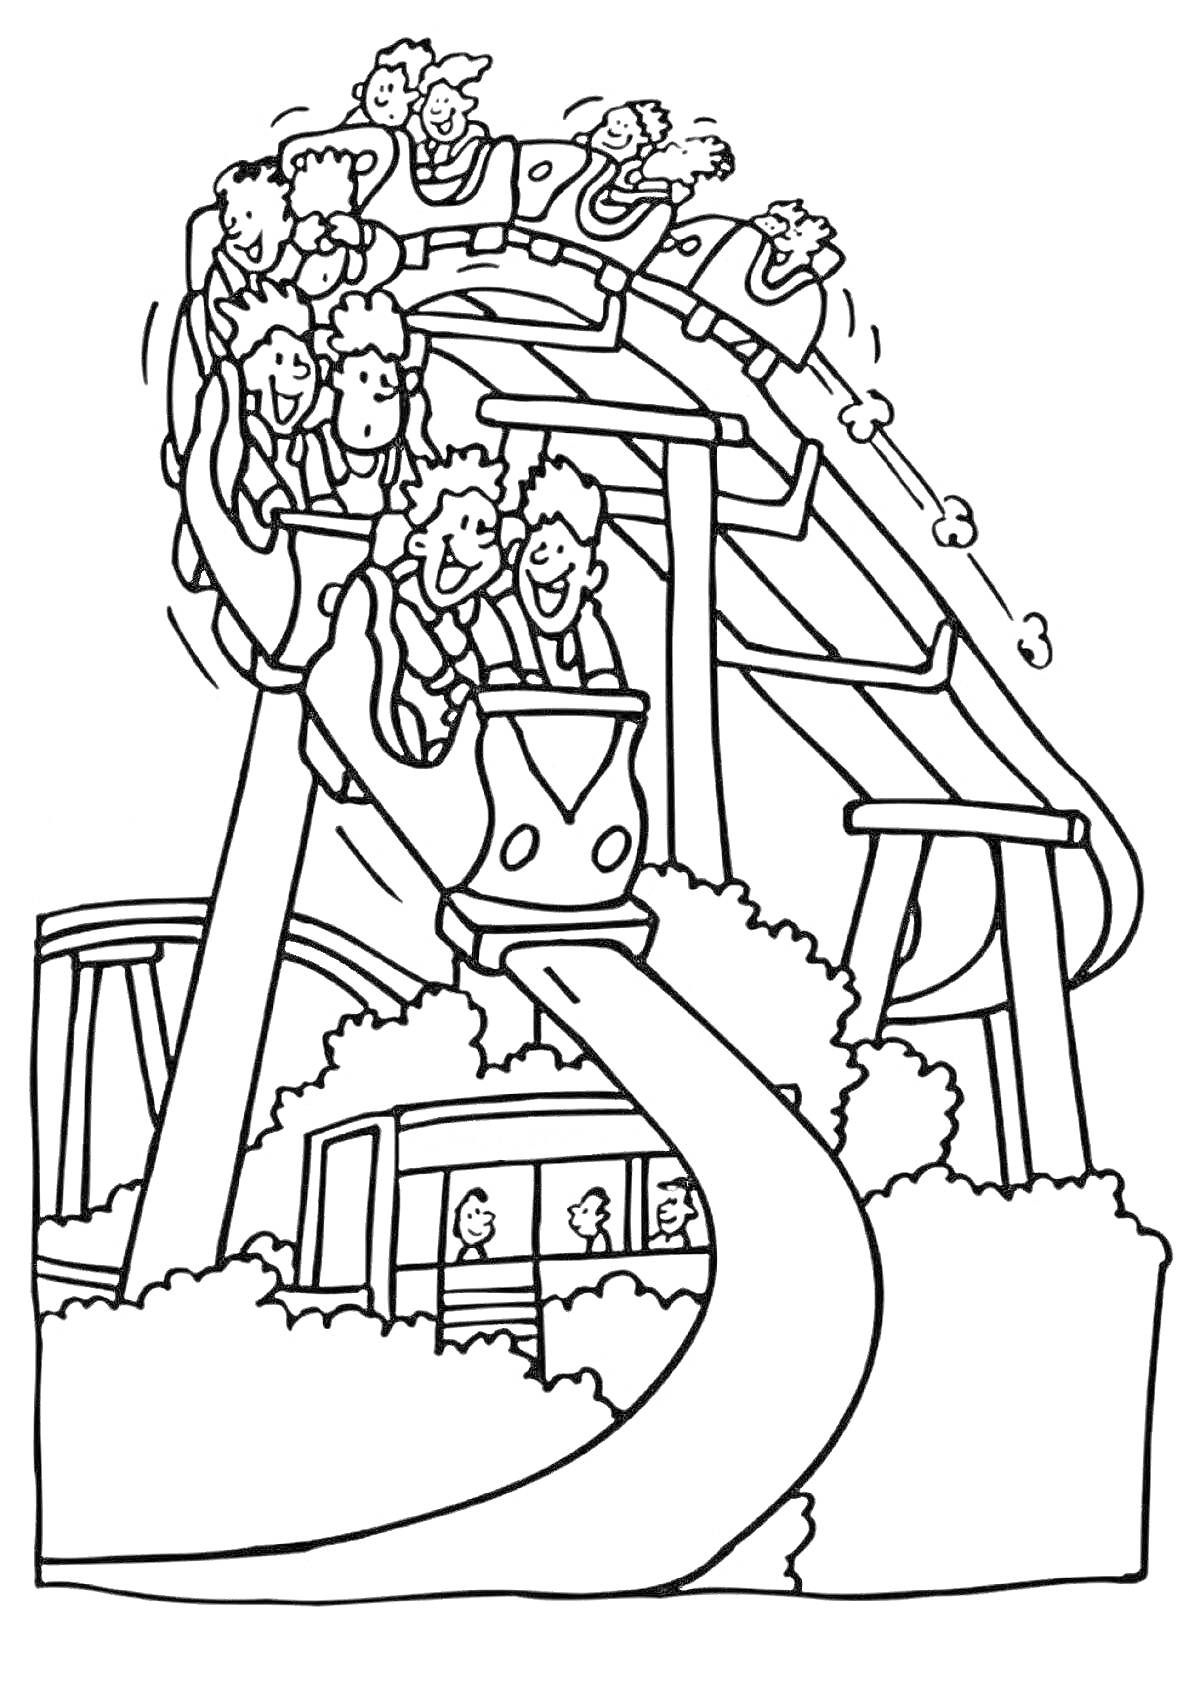 Раскраска Американские горки с детьми на вагончиках и посетителями в парке развлечений